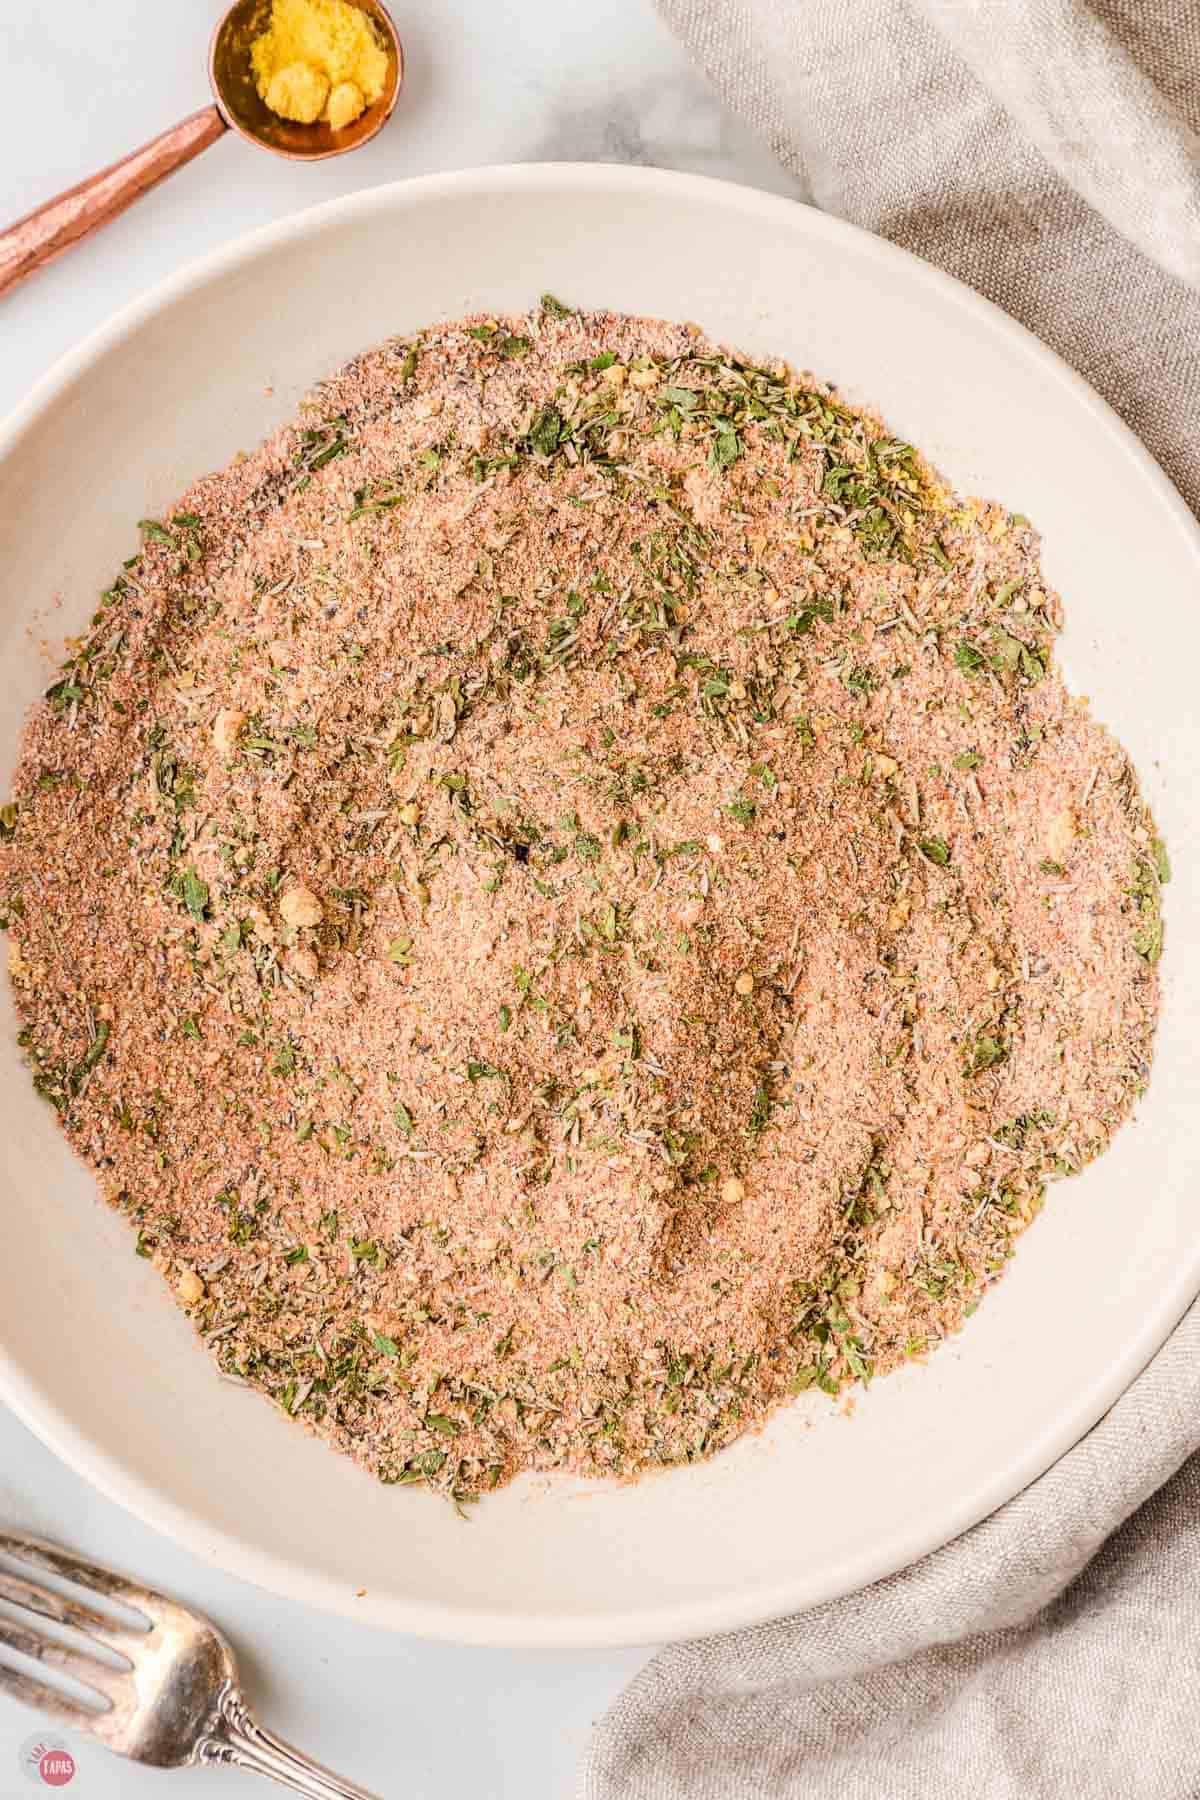 stir homemade seasonings in a bowl